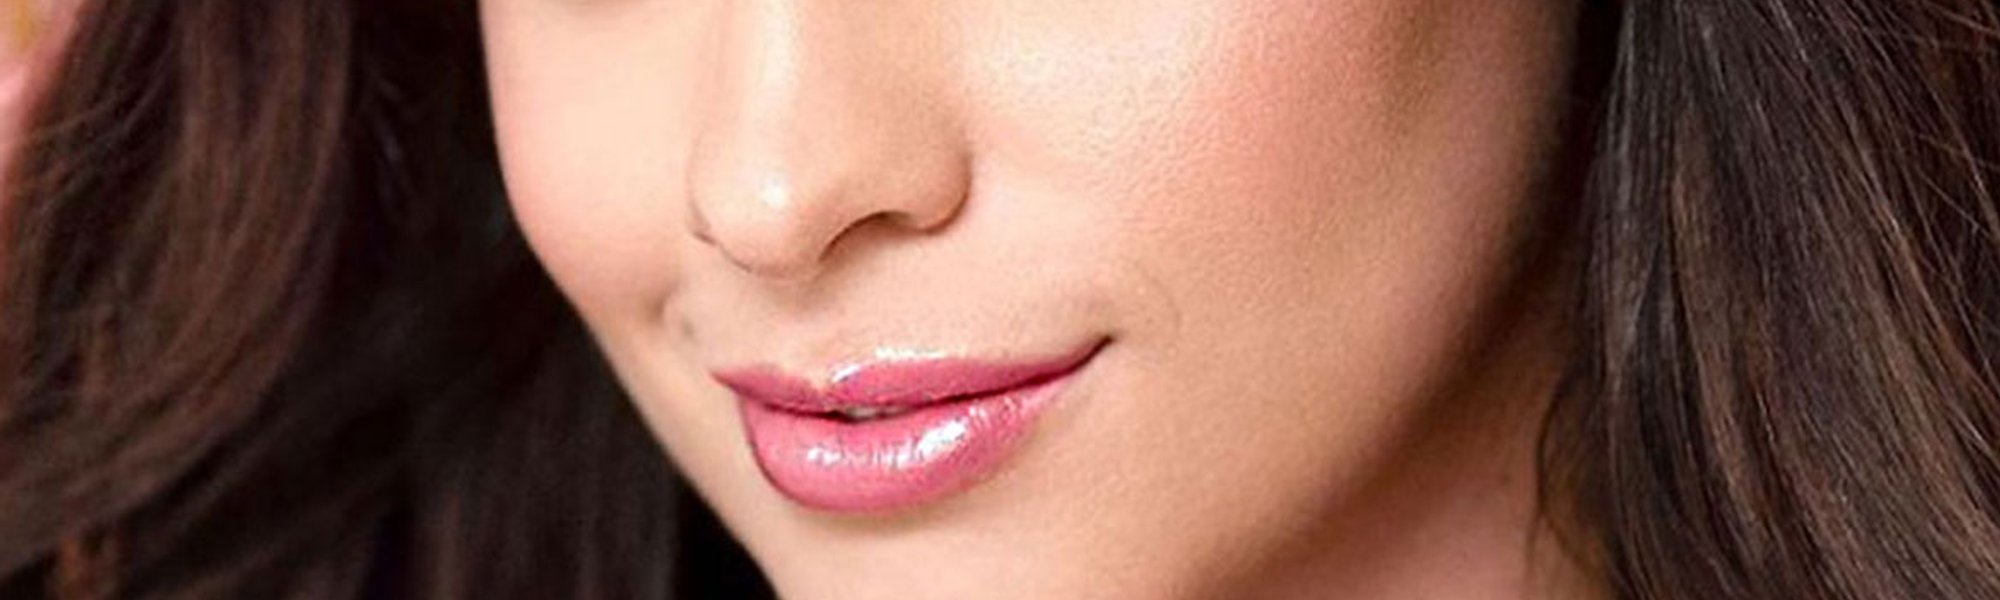 Los labios brillantes son perfectos para cualquier maquillaje de día o de noche, sobre todo si además de dar color hidratan y cuidan nuestros labios como Glow Paradise Balm de L'Oréal Paris. 